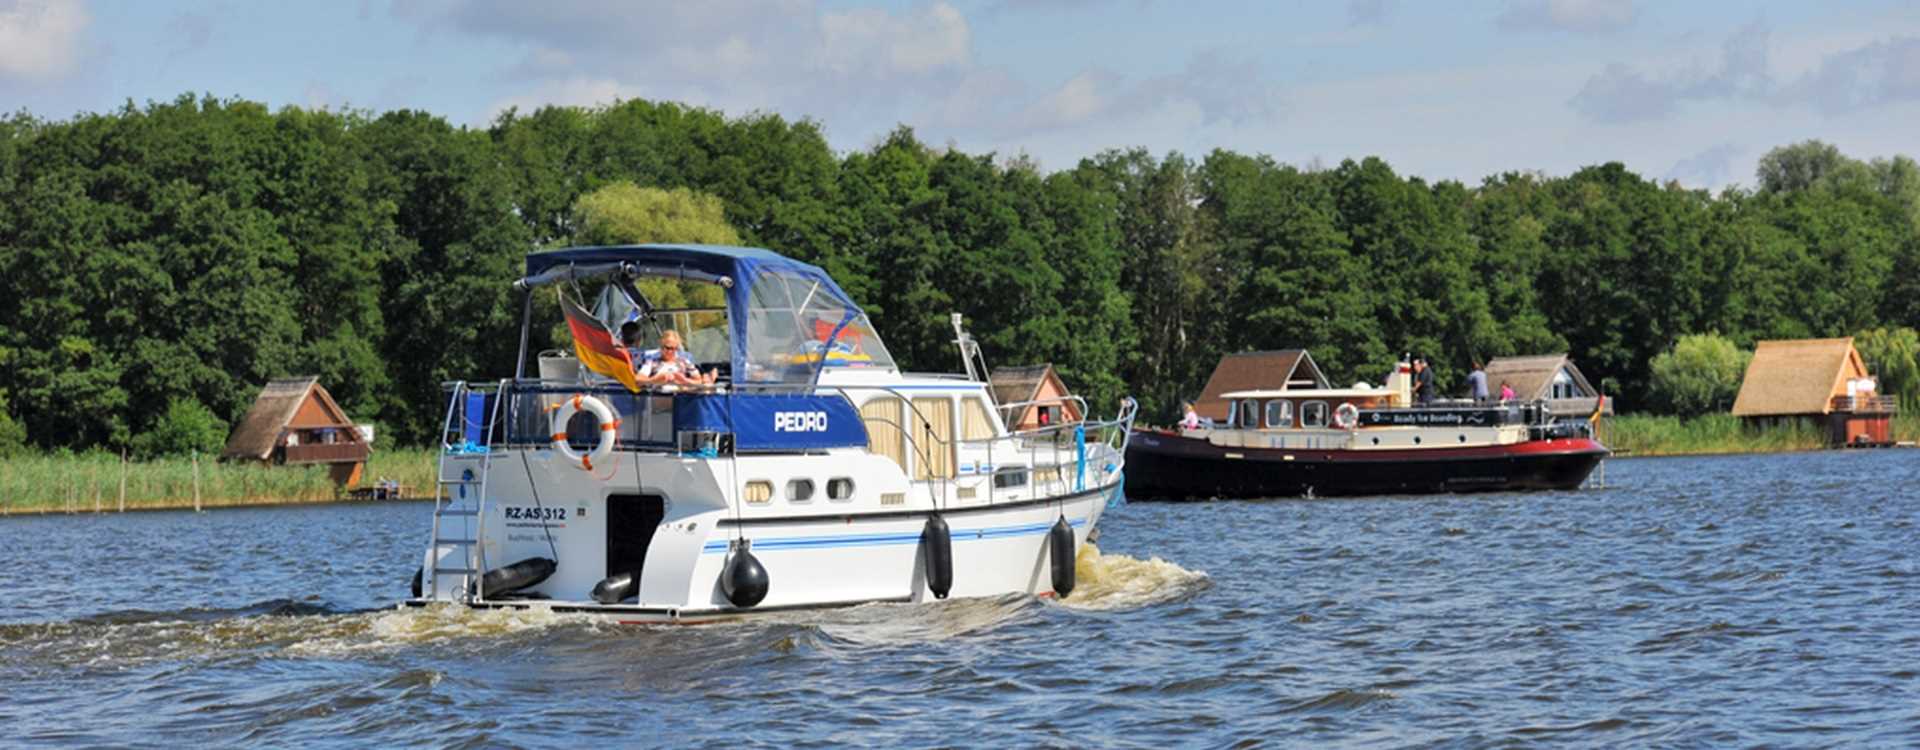 Yacht mieten für einen Bootsurlaub auf der Müritz, Mecklenburgische Seenplatte, in Brandenburg und Berlin